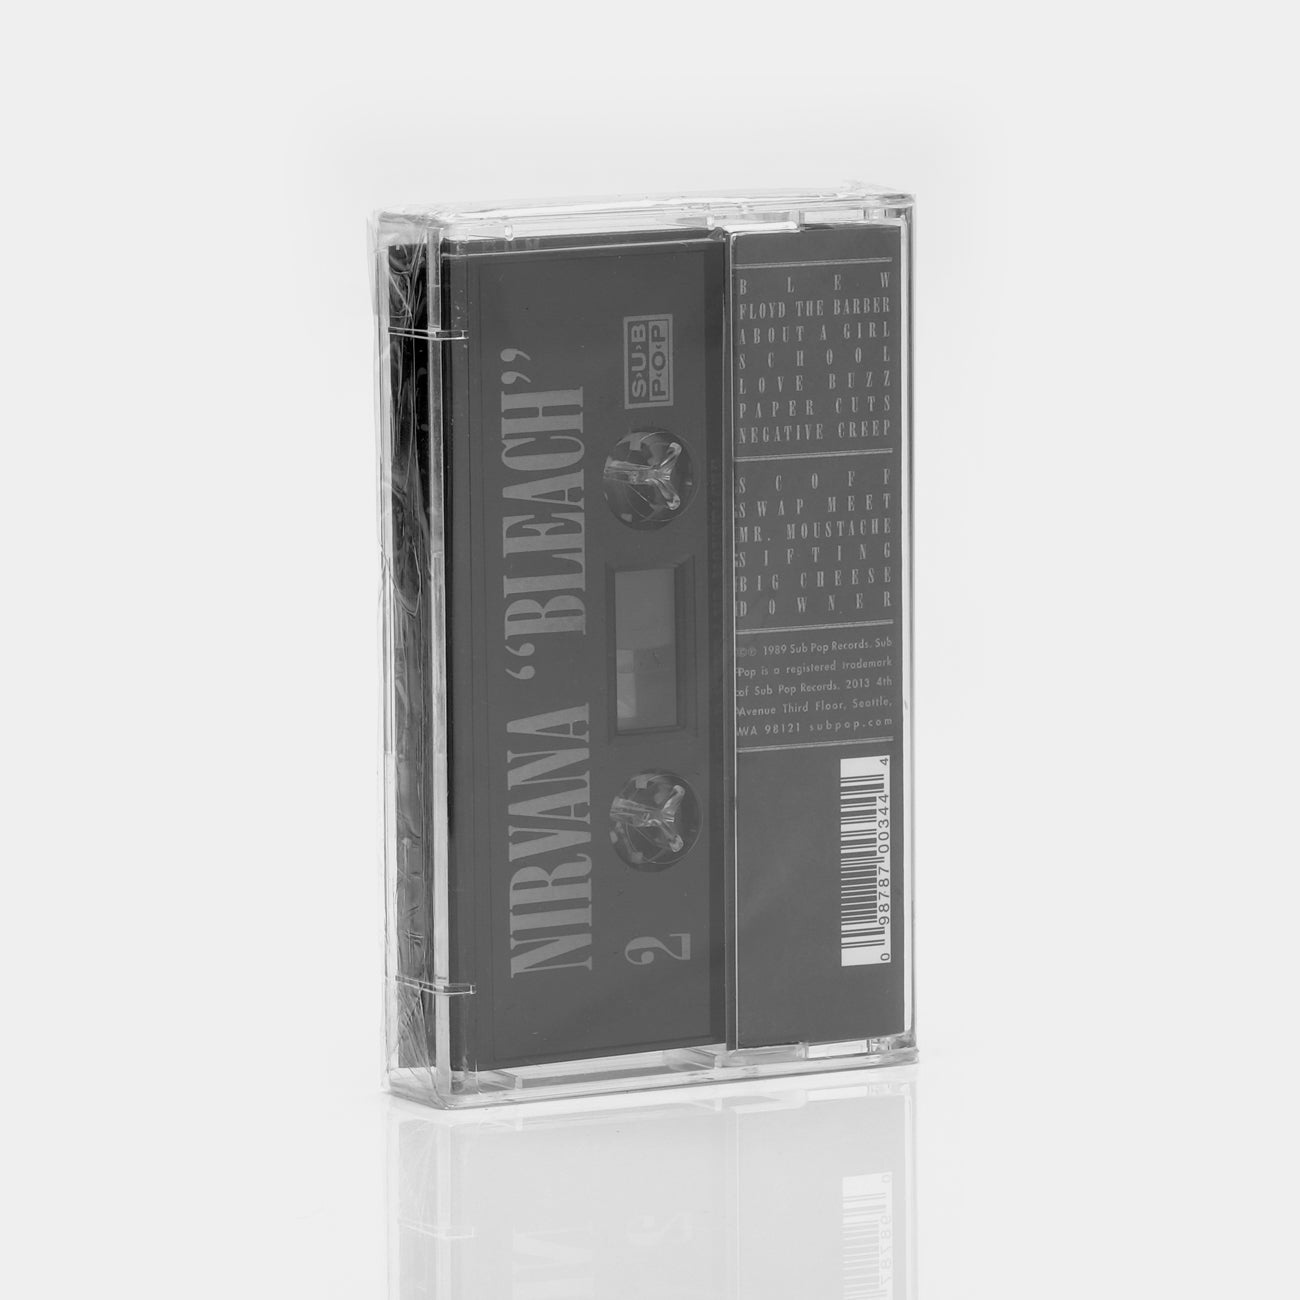 Nirvana - Bleach Cassette Tape